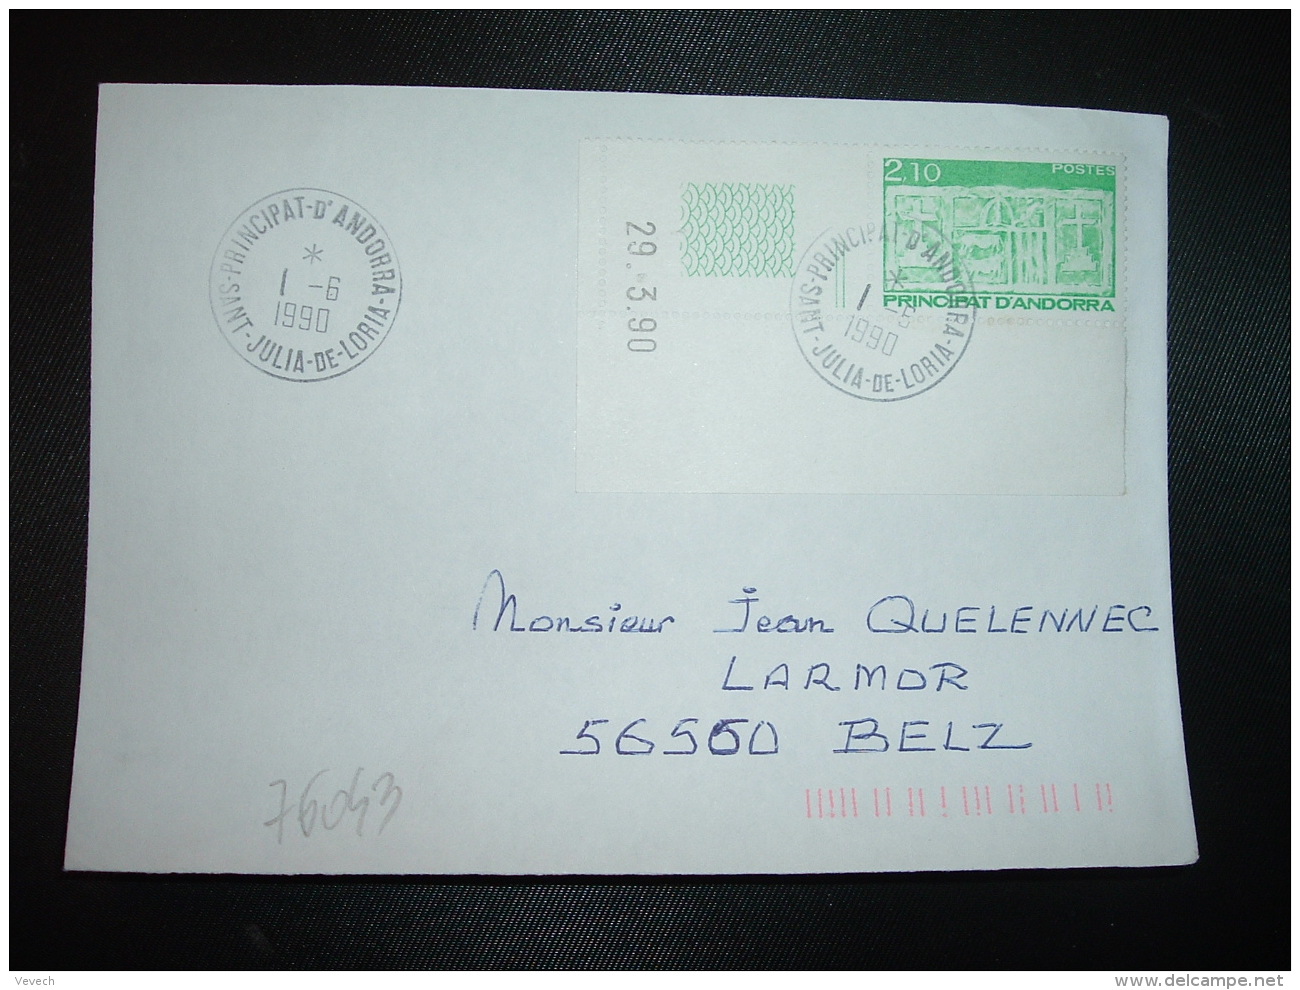 LETTRE TP 2,10 COIN DATE 29.3.90 OBL.1-6 1990 SAINT JULIA DE LORIA - Cartas & Documentos